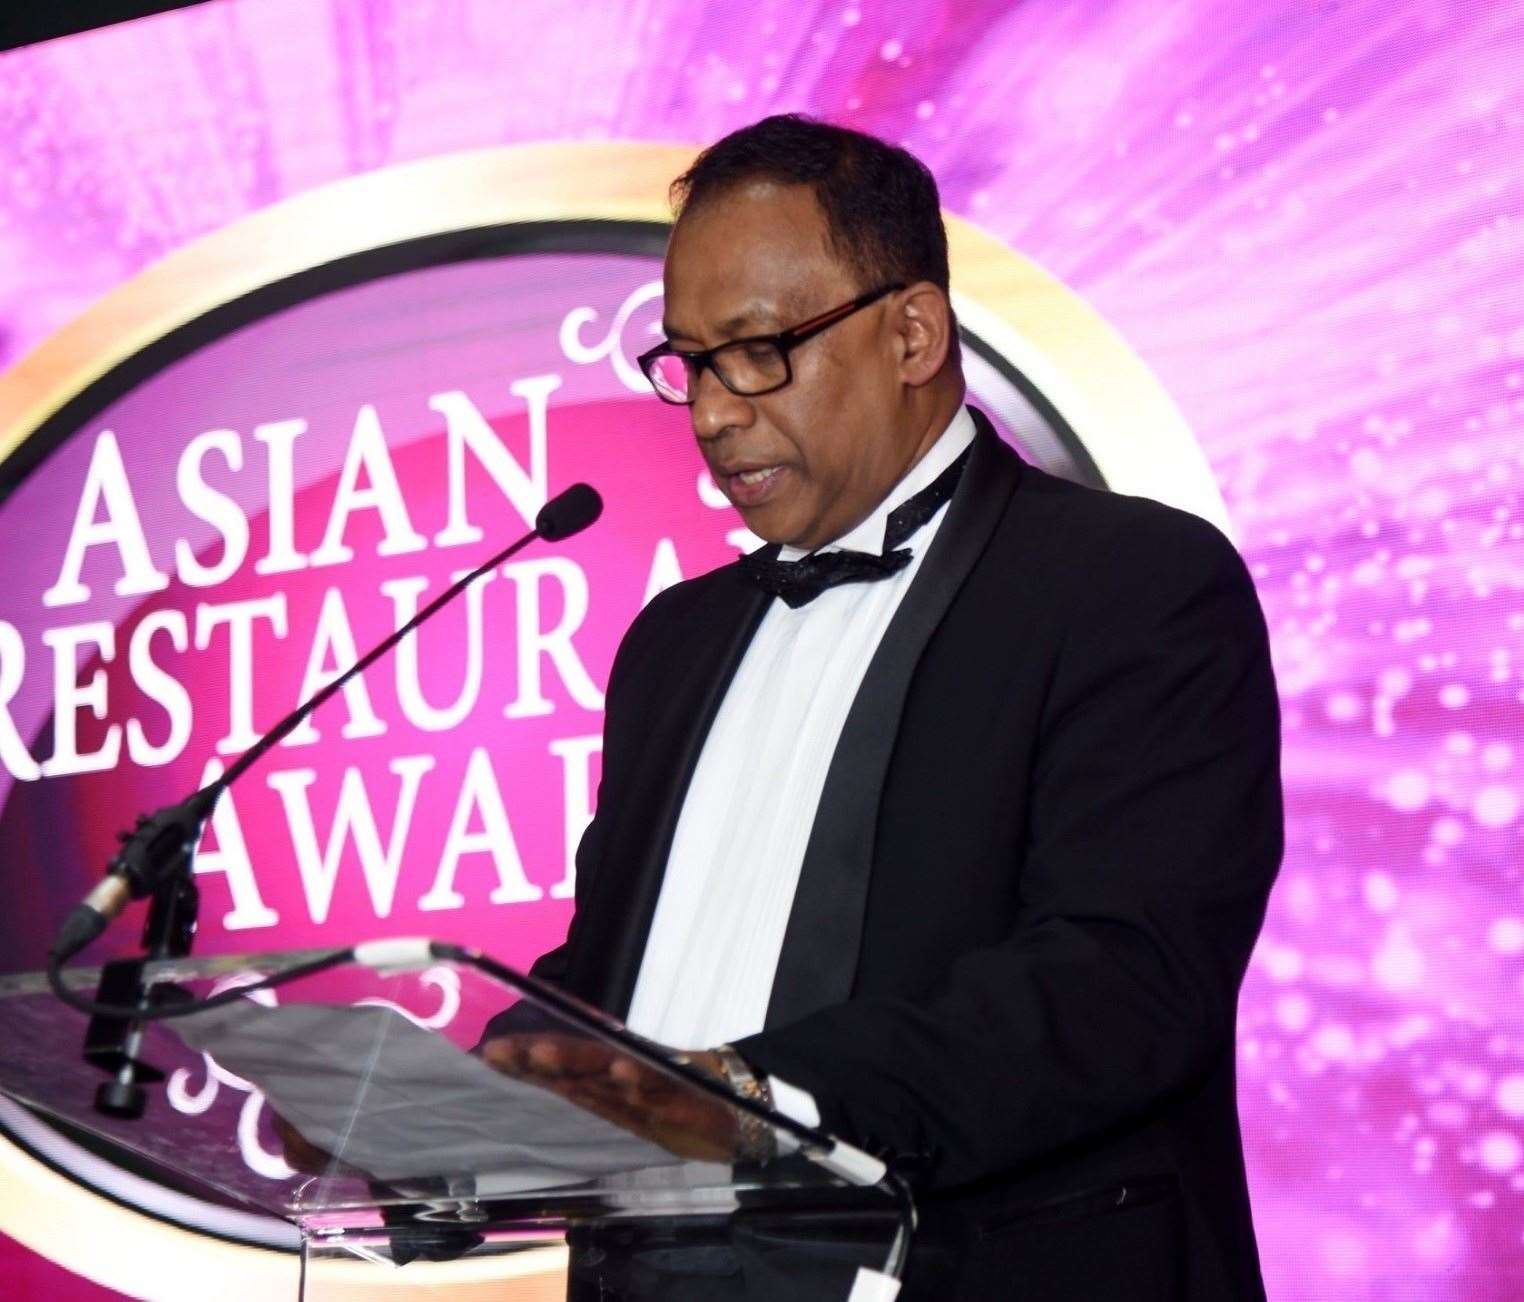 Asian Catering Federation Chairman Yawar Khan.